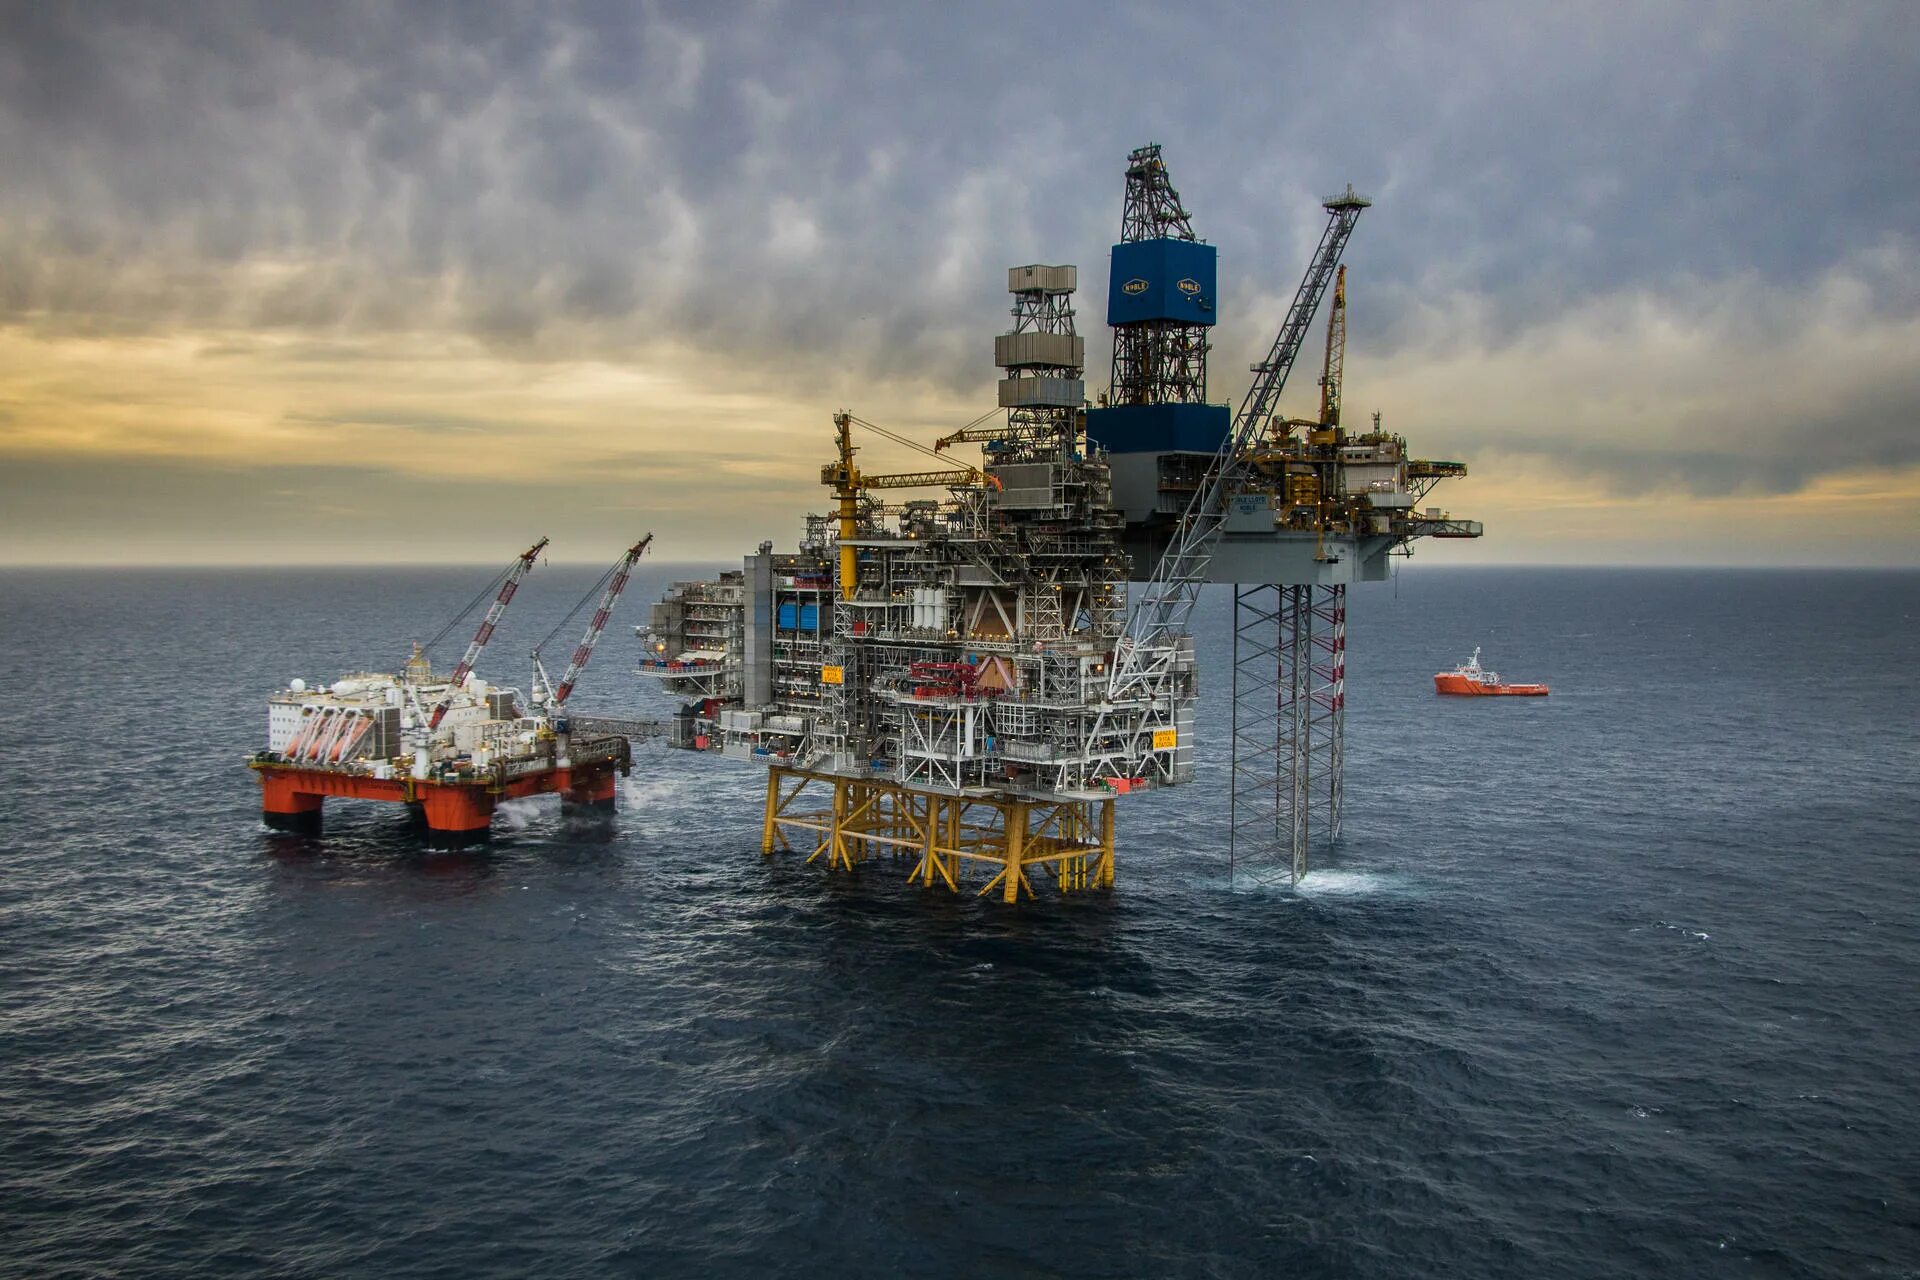 Освоение месторождений нефти и газа. Шельфовые месторождения нефти. Offshore Oil and Gas в Северном море Англии. Нефть на шельфе Северного моря. Норвегия нефтяные месторождения Equinor.